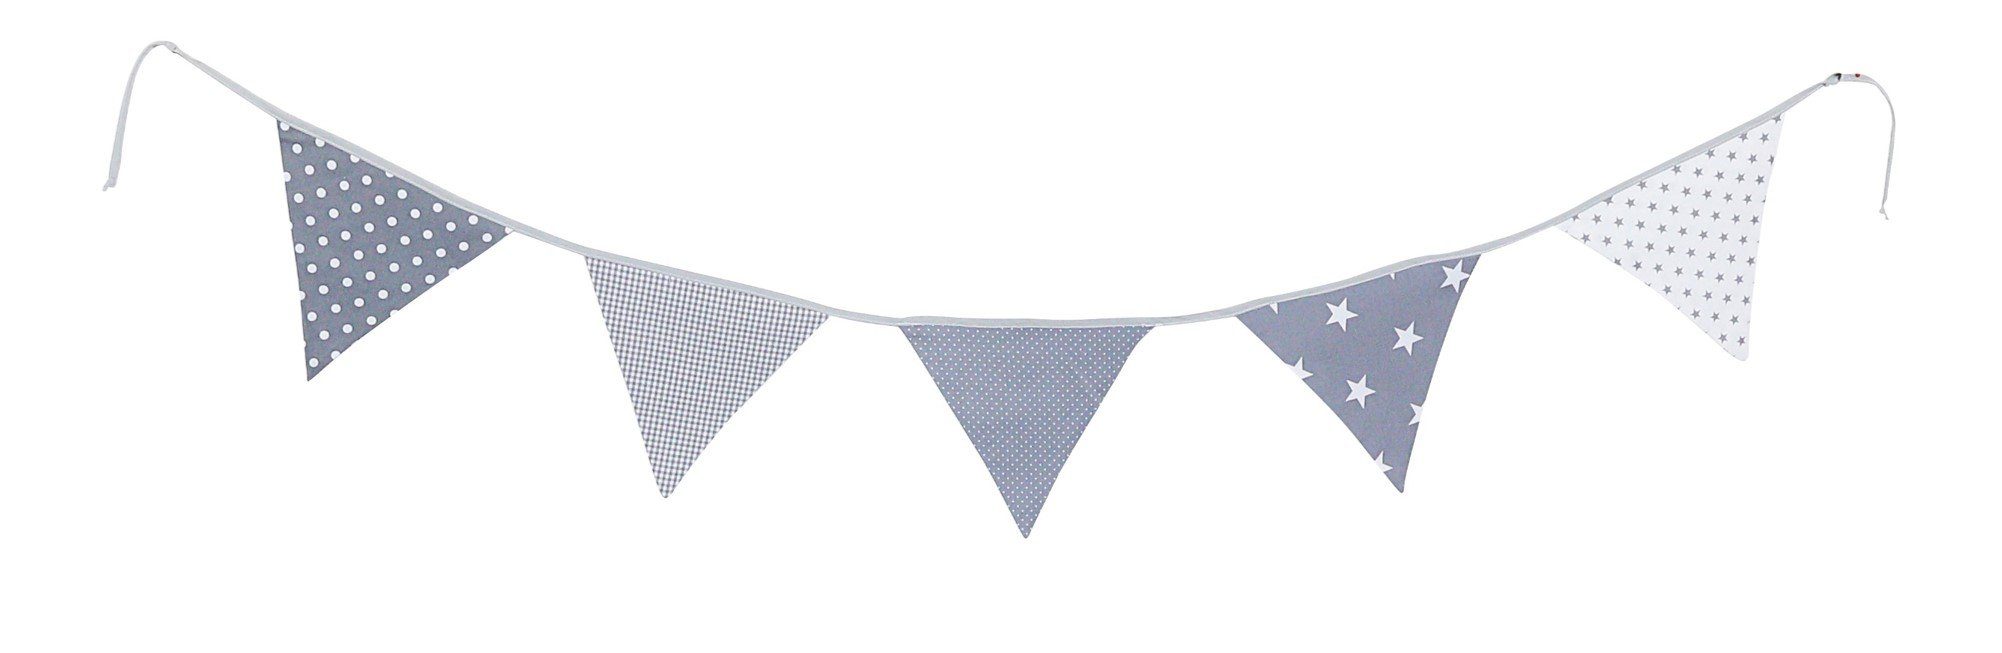 ULLENBOOM ® Wimpelkette Wimpelkette Sterne Stoff das 100% cm 190 Deko-Girlande aus Kinderzimmer, Baumwolle (Made EU), für in Wimpeln Graue 5 mit